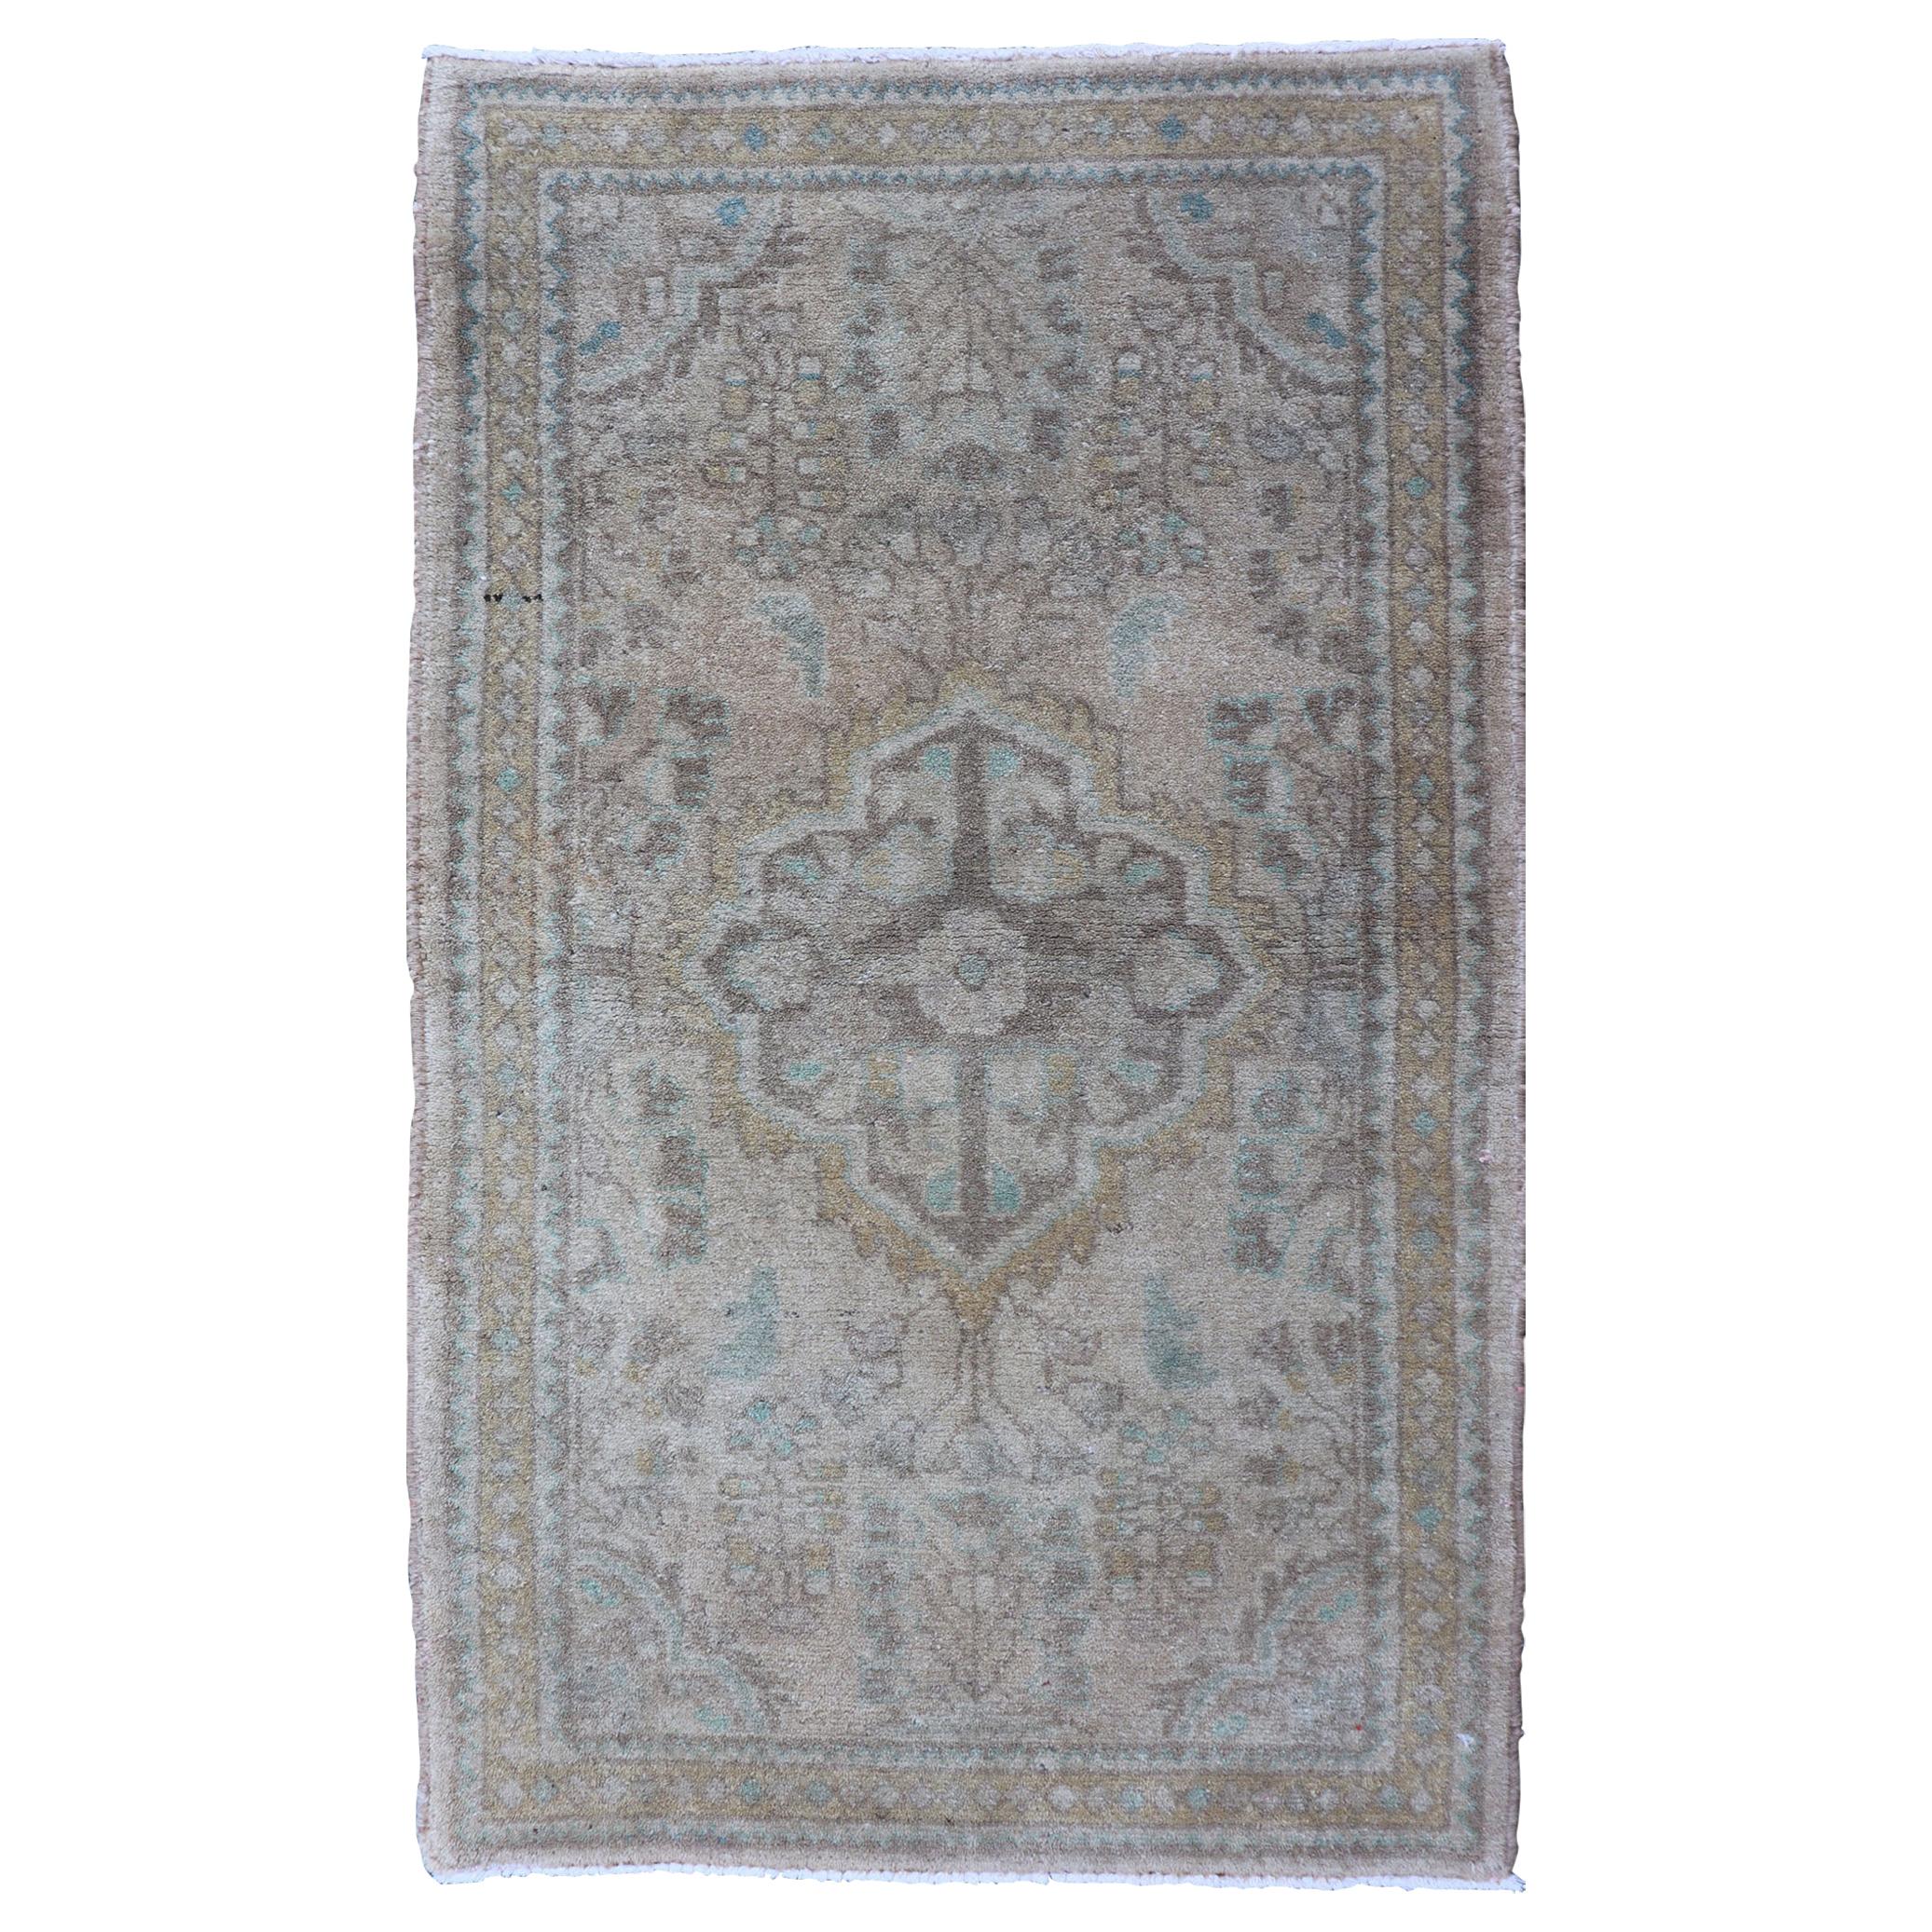 Persischer Lilihan-Teppich im Vintage-Stil, neutral und erdfarben, mit Medaillon in Taupe